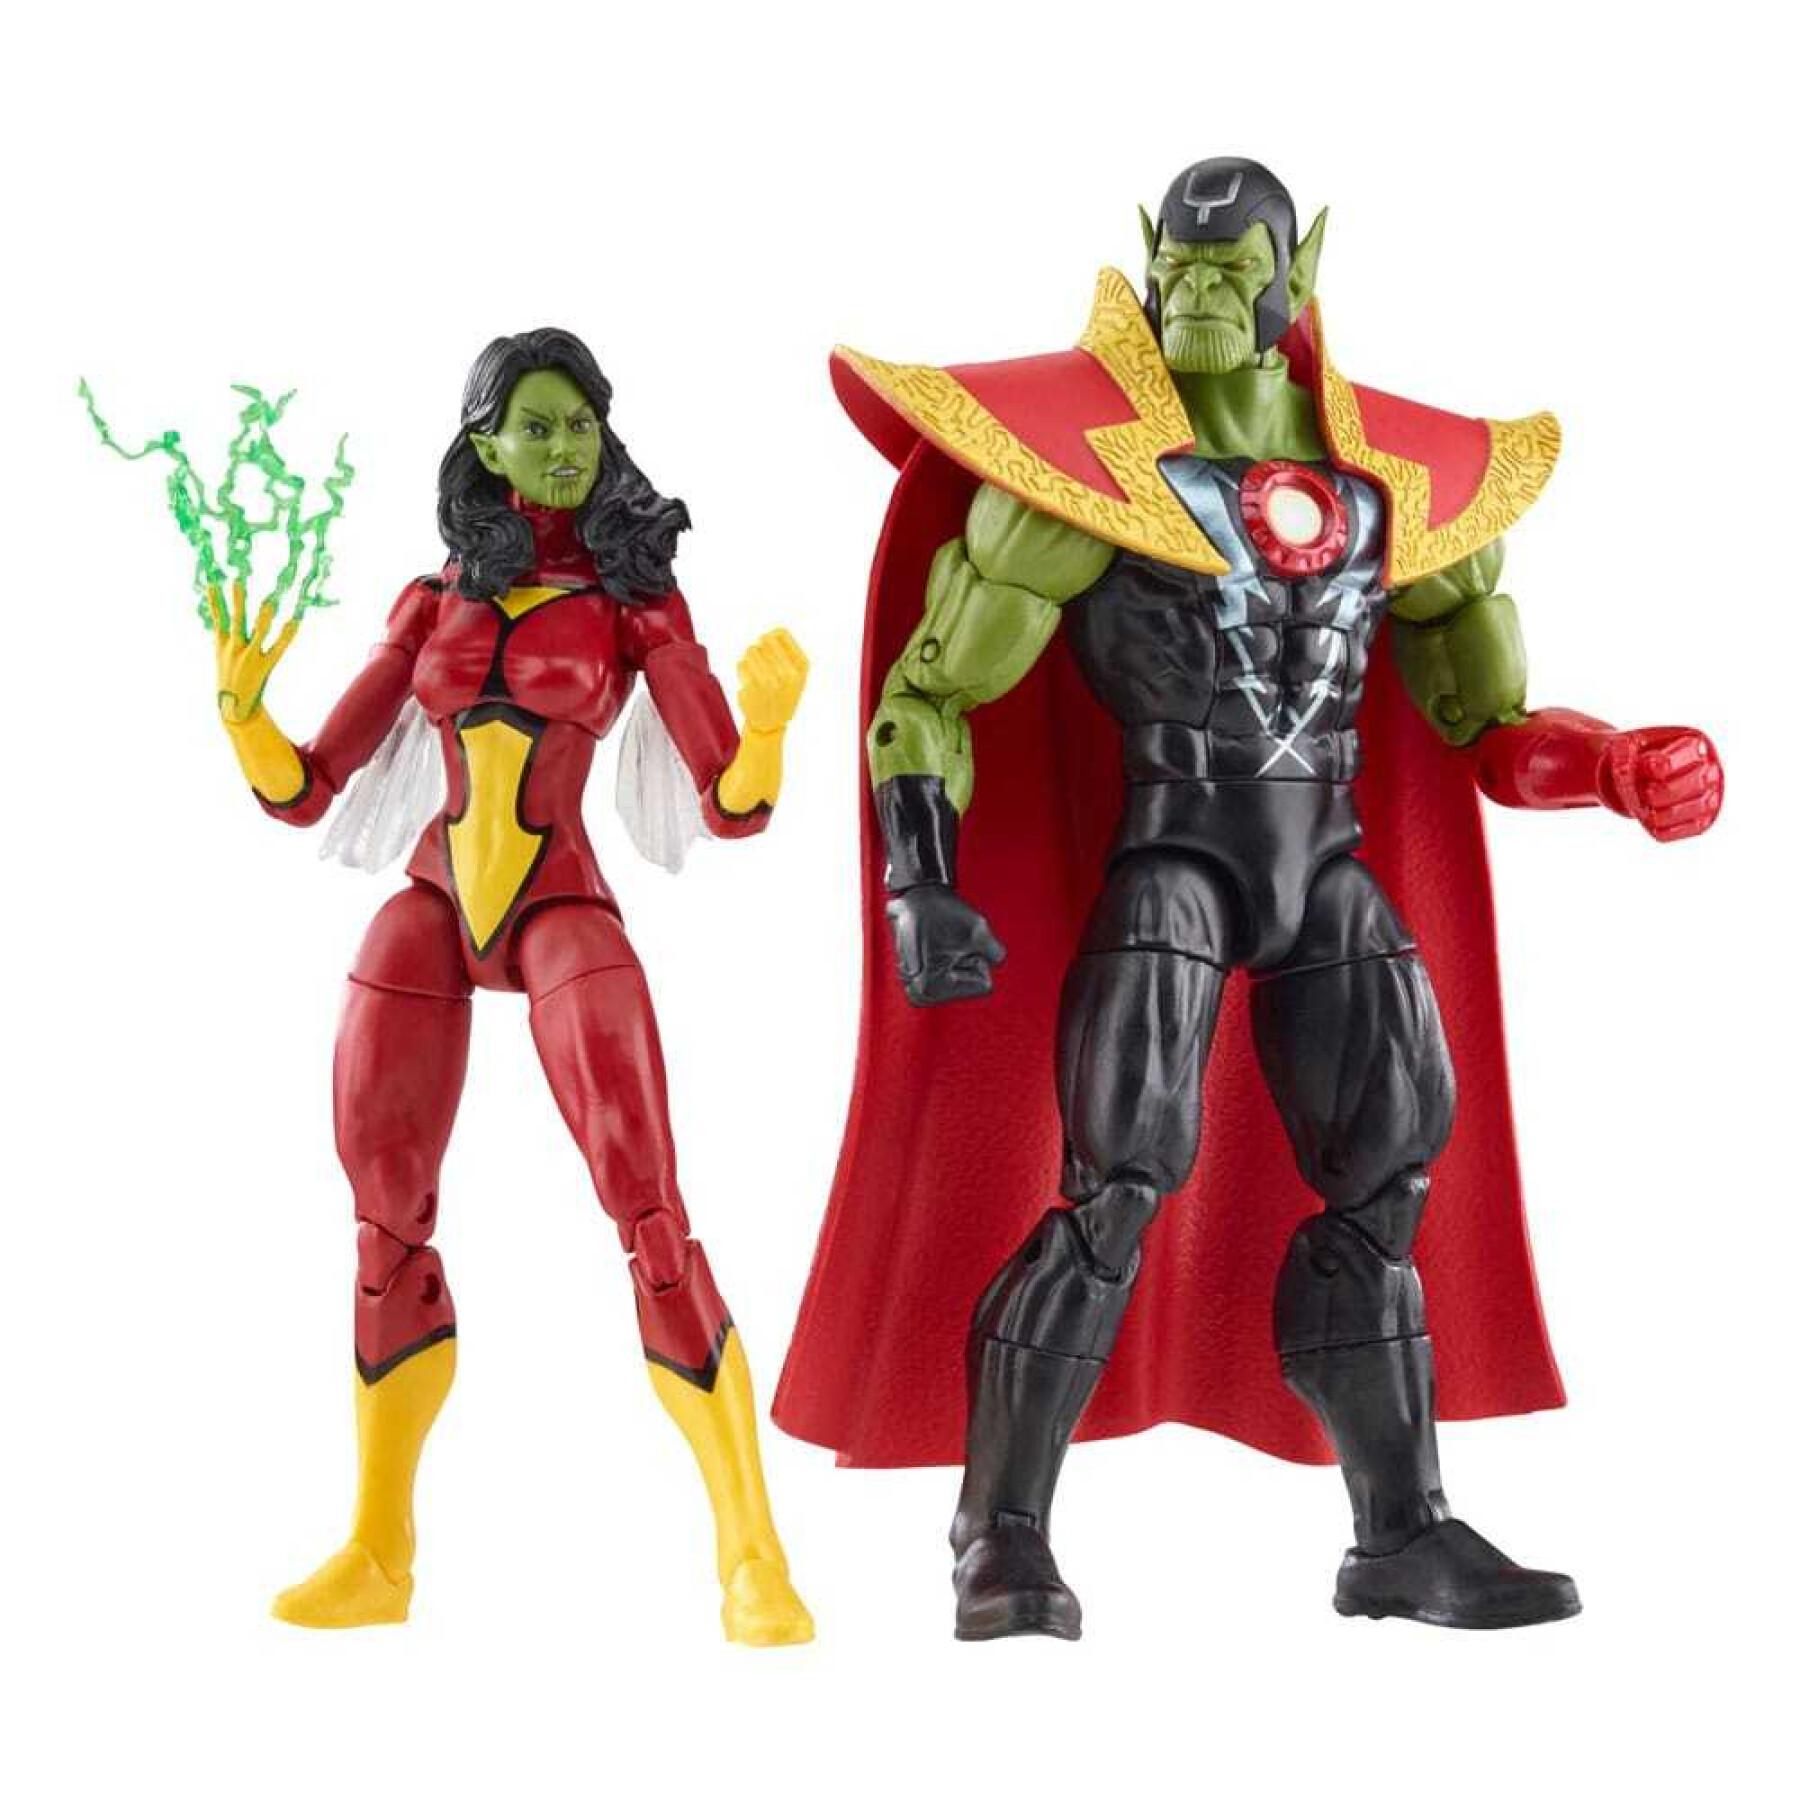 Rainha Skrull e estatueta de super-skrull Hasbro Avengers: Beyond Earth's Mightiest Marvel Legends